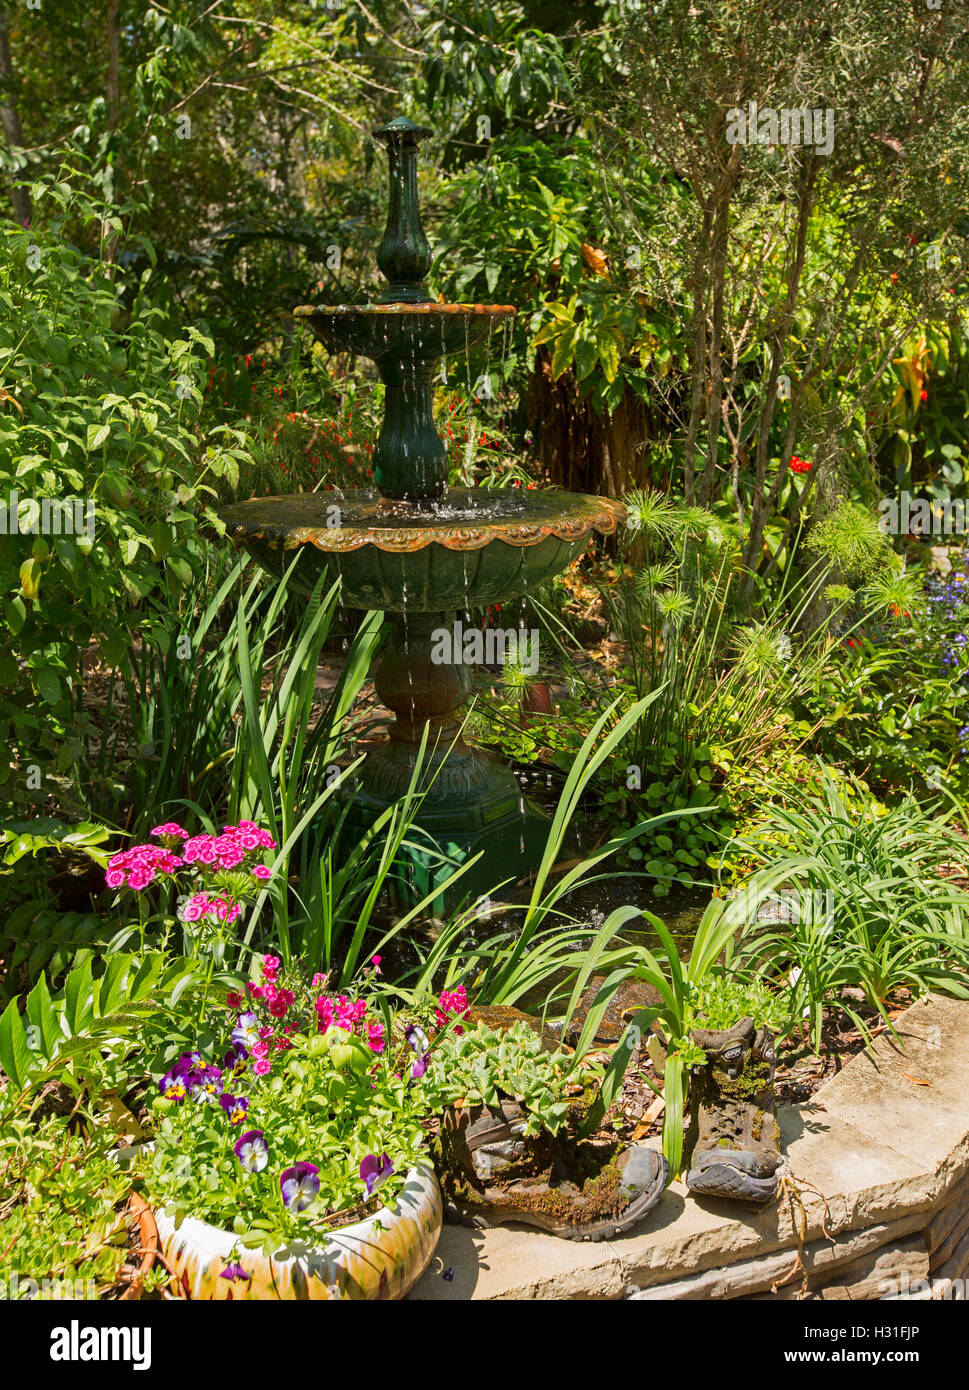 Giardino ornato di fontana circondata da massa di smeraldo fogliame verde, alberi e fiori colorati in contenitori decorativi Foto Stock